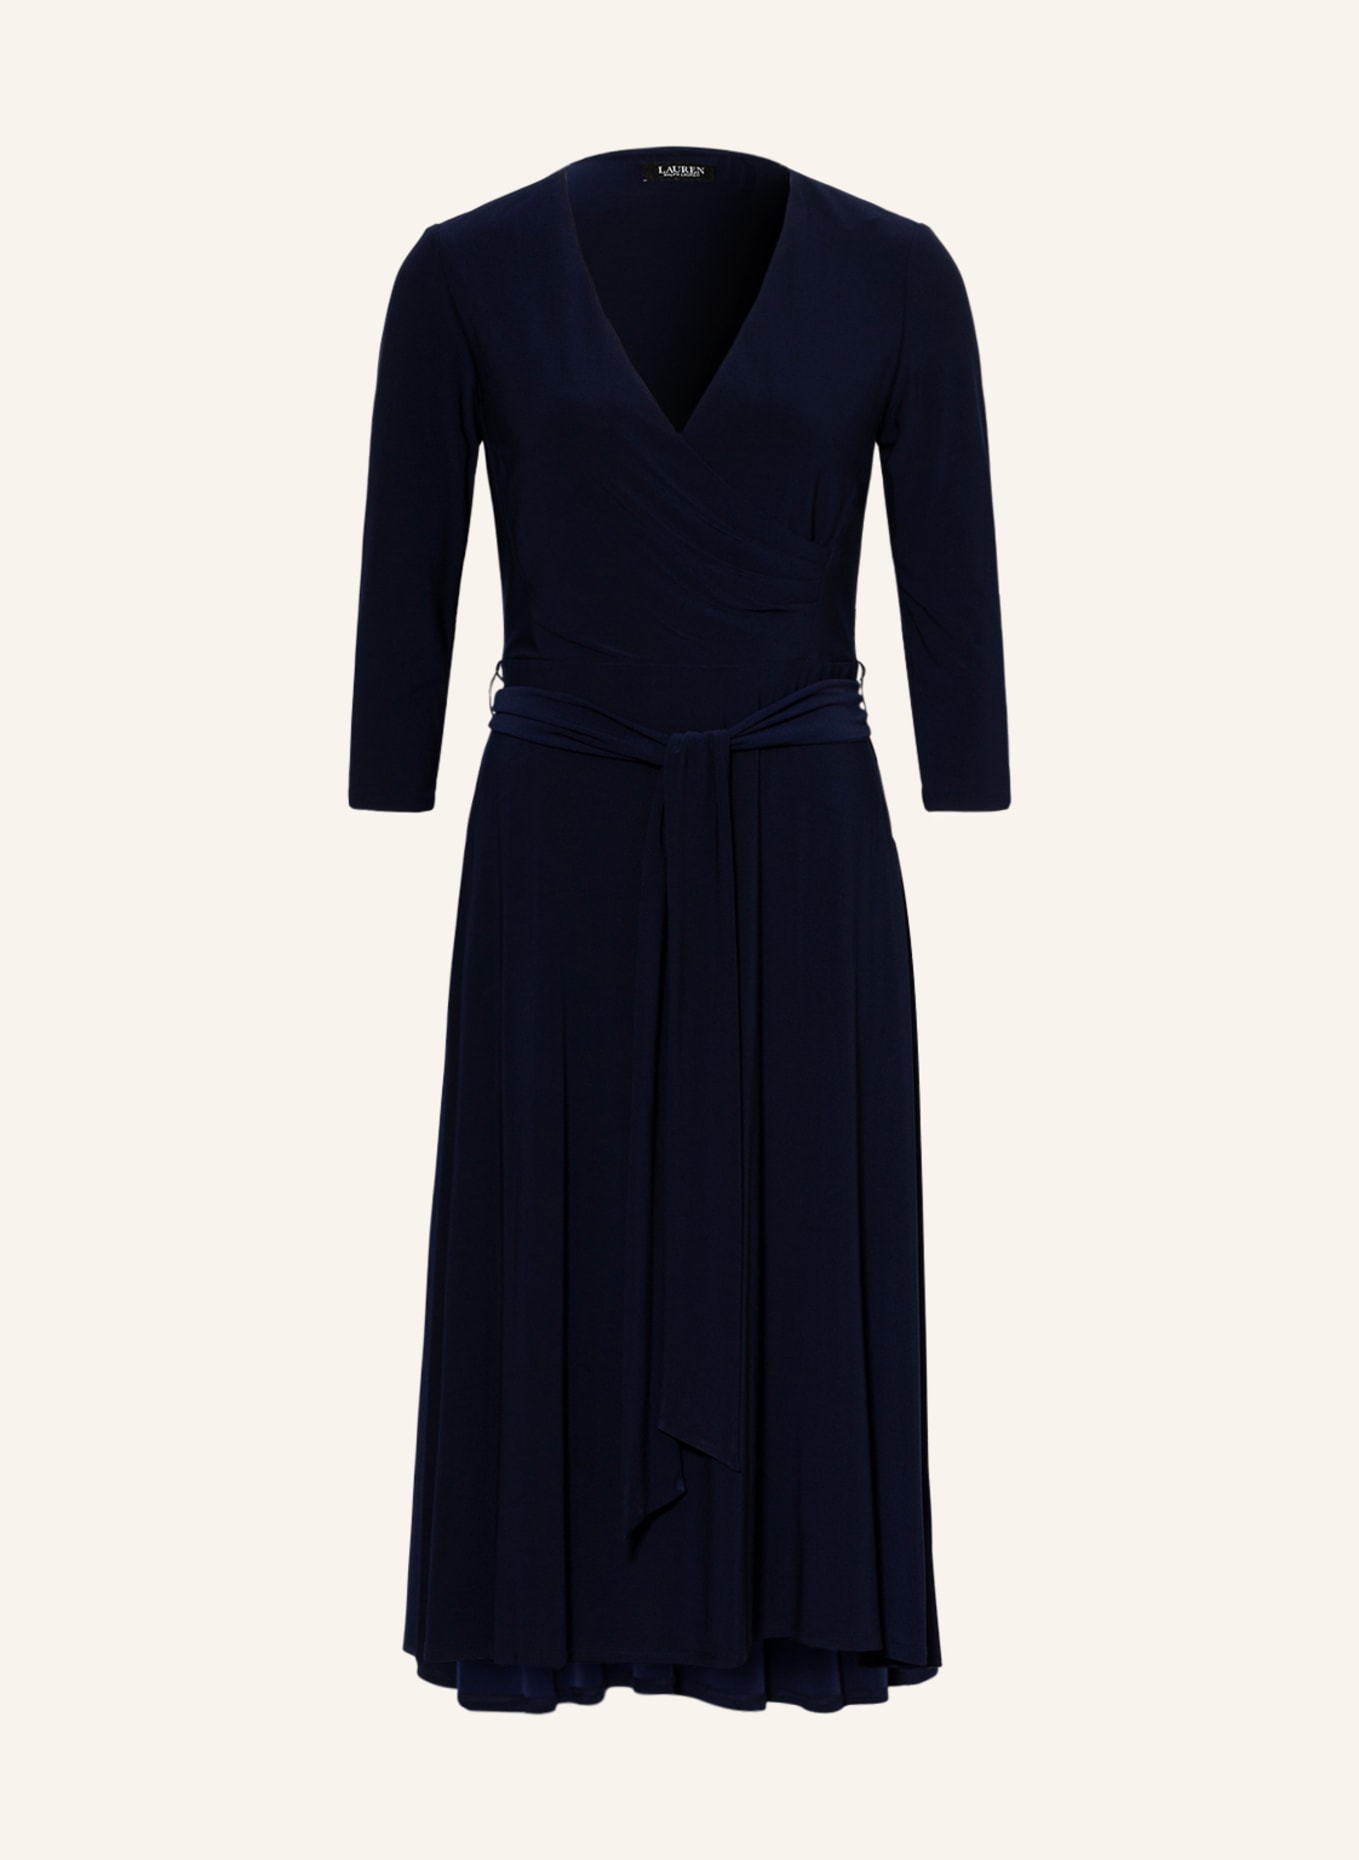 LAUREN RALPH LAUREN Kleid mit 3/4-Arm, Farbe: DUNKELBLAU (Bild 1)